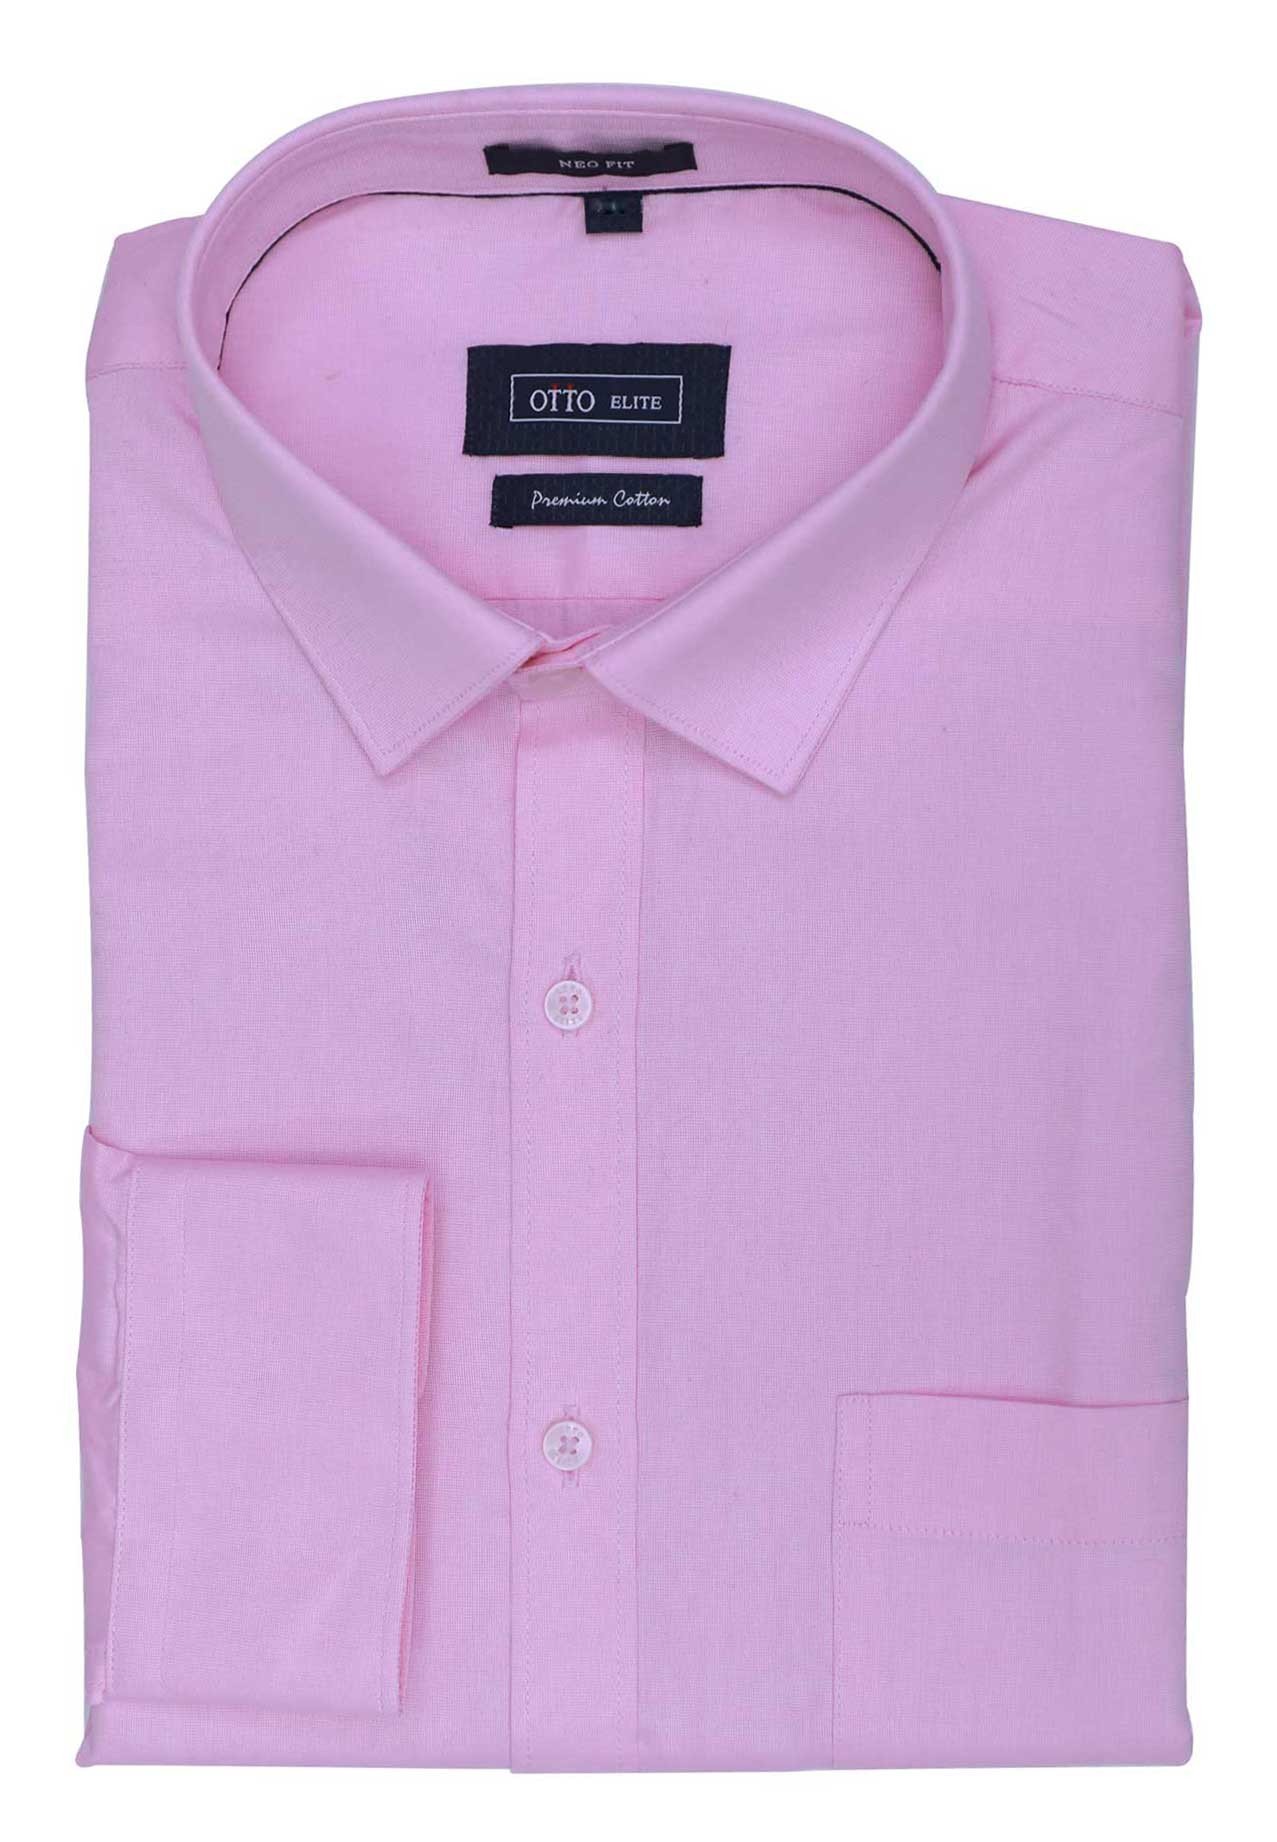 Buy Otto Elite Mens Formal Shirt Pink Online Dubai, UAE | OurShopee.com ...